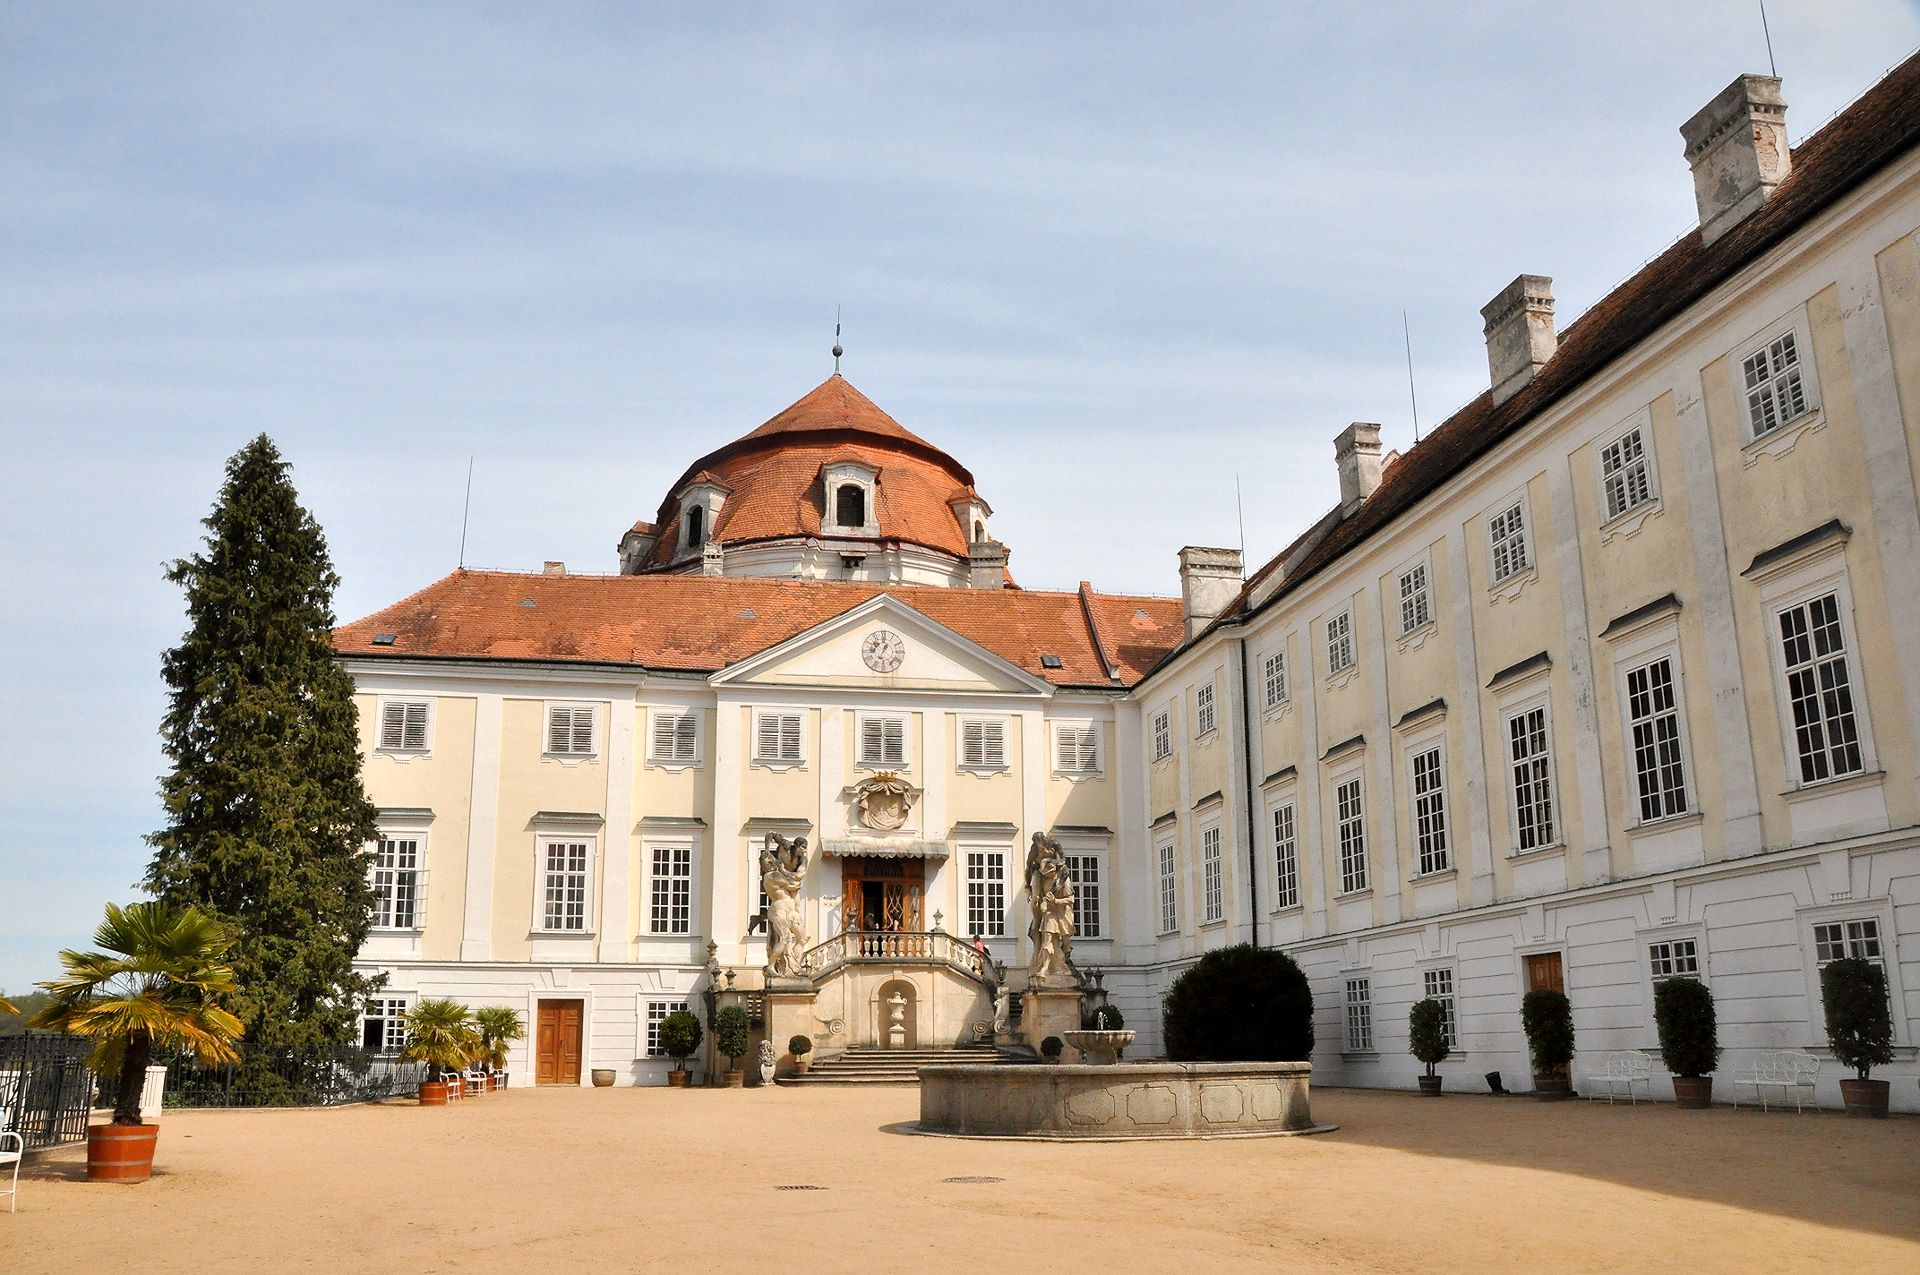 Der Hof im Zentrum des barocken Schlosses, die Kuppel bedeckt den Ahnensaal